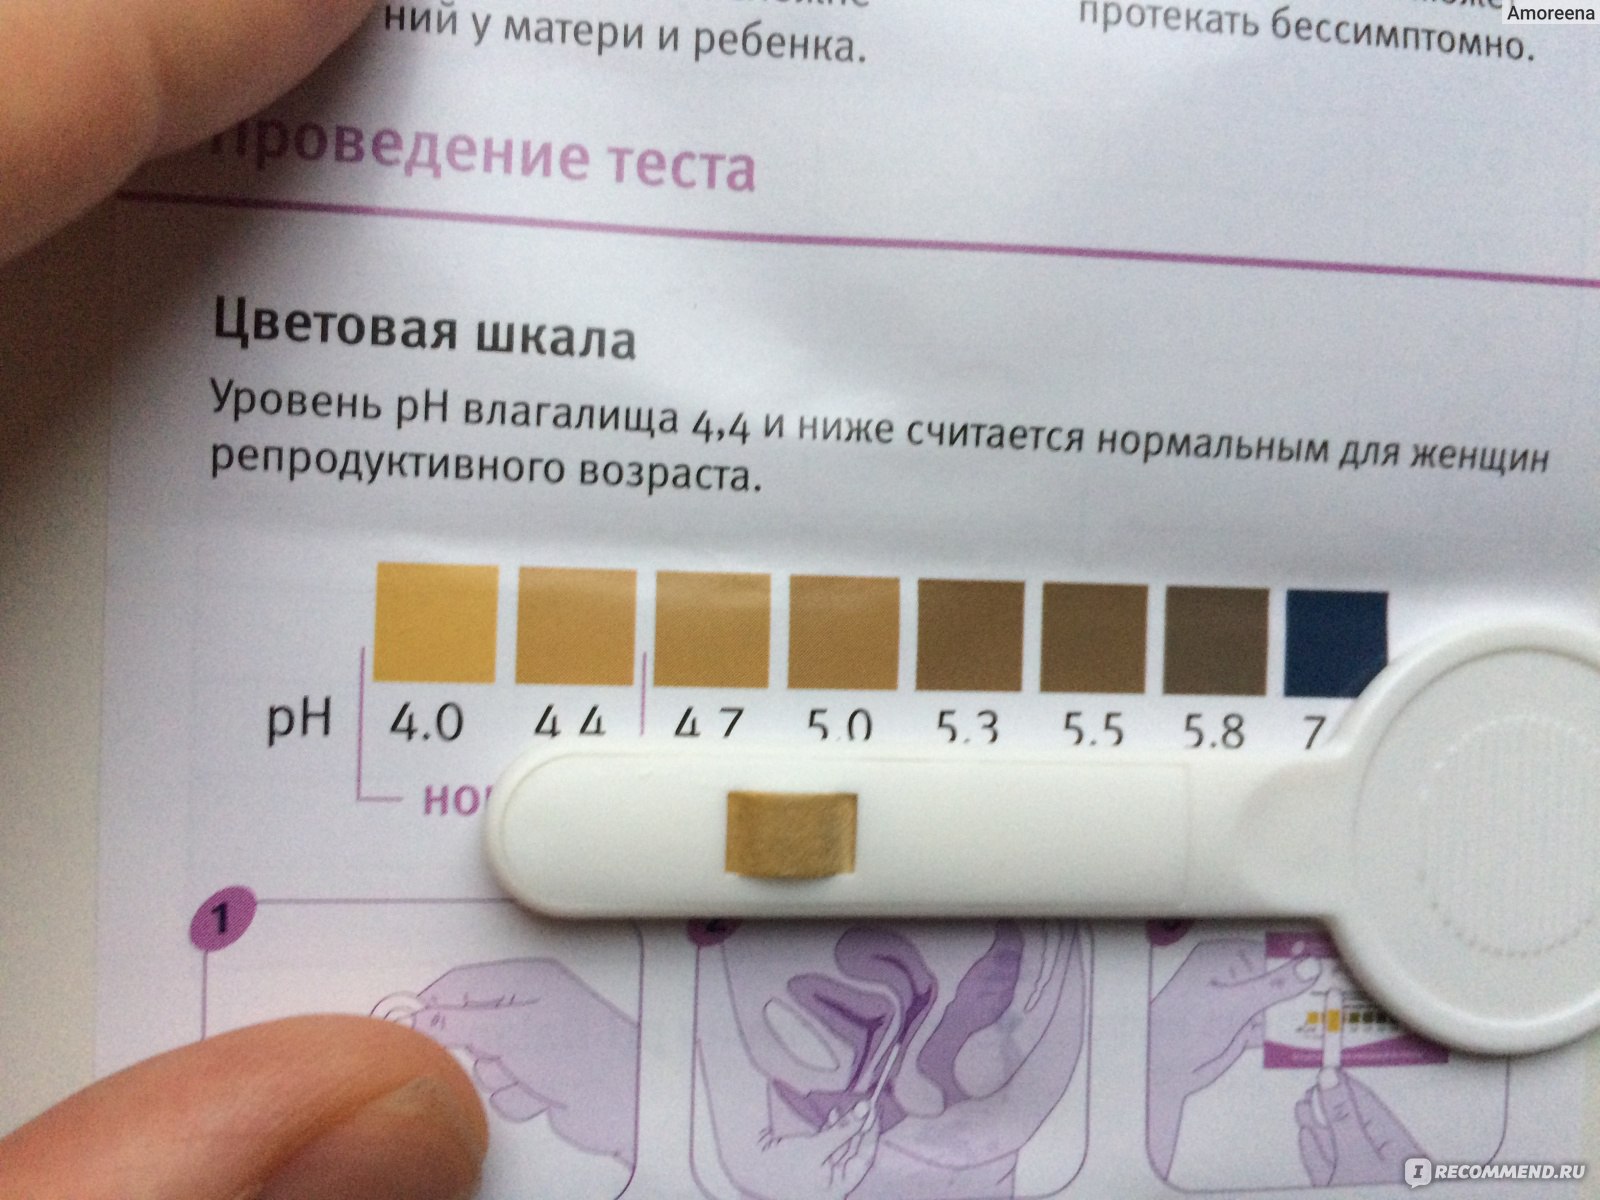 Может ли уровень pH во влагалище действительно снизиться? | UMS Beauty